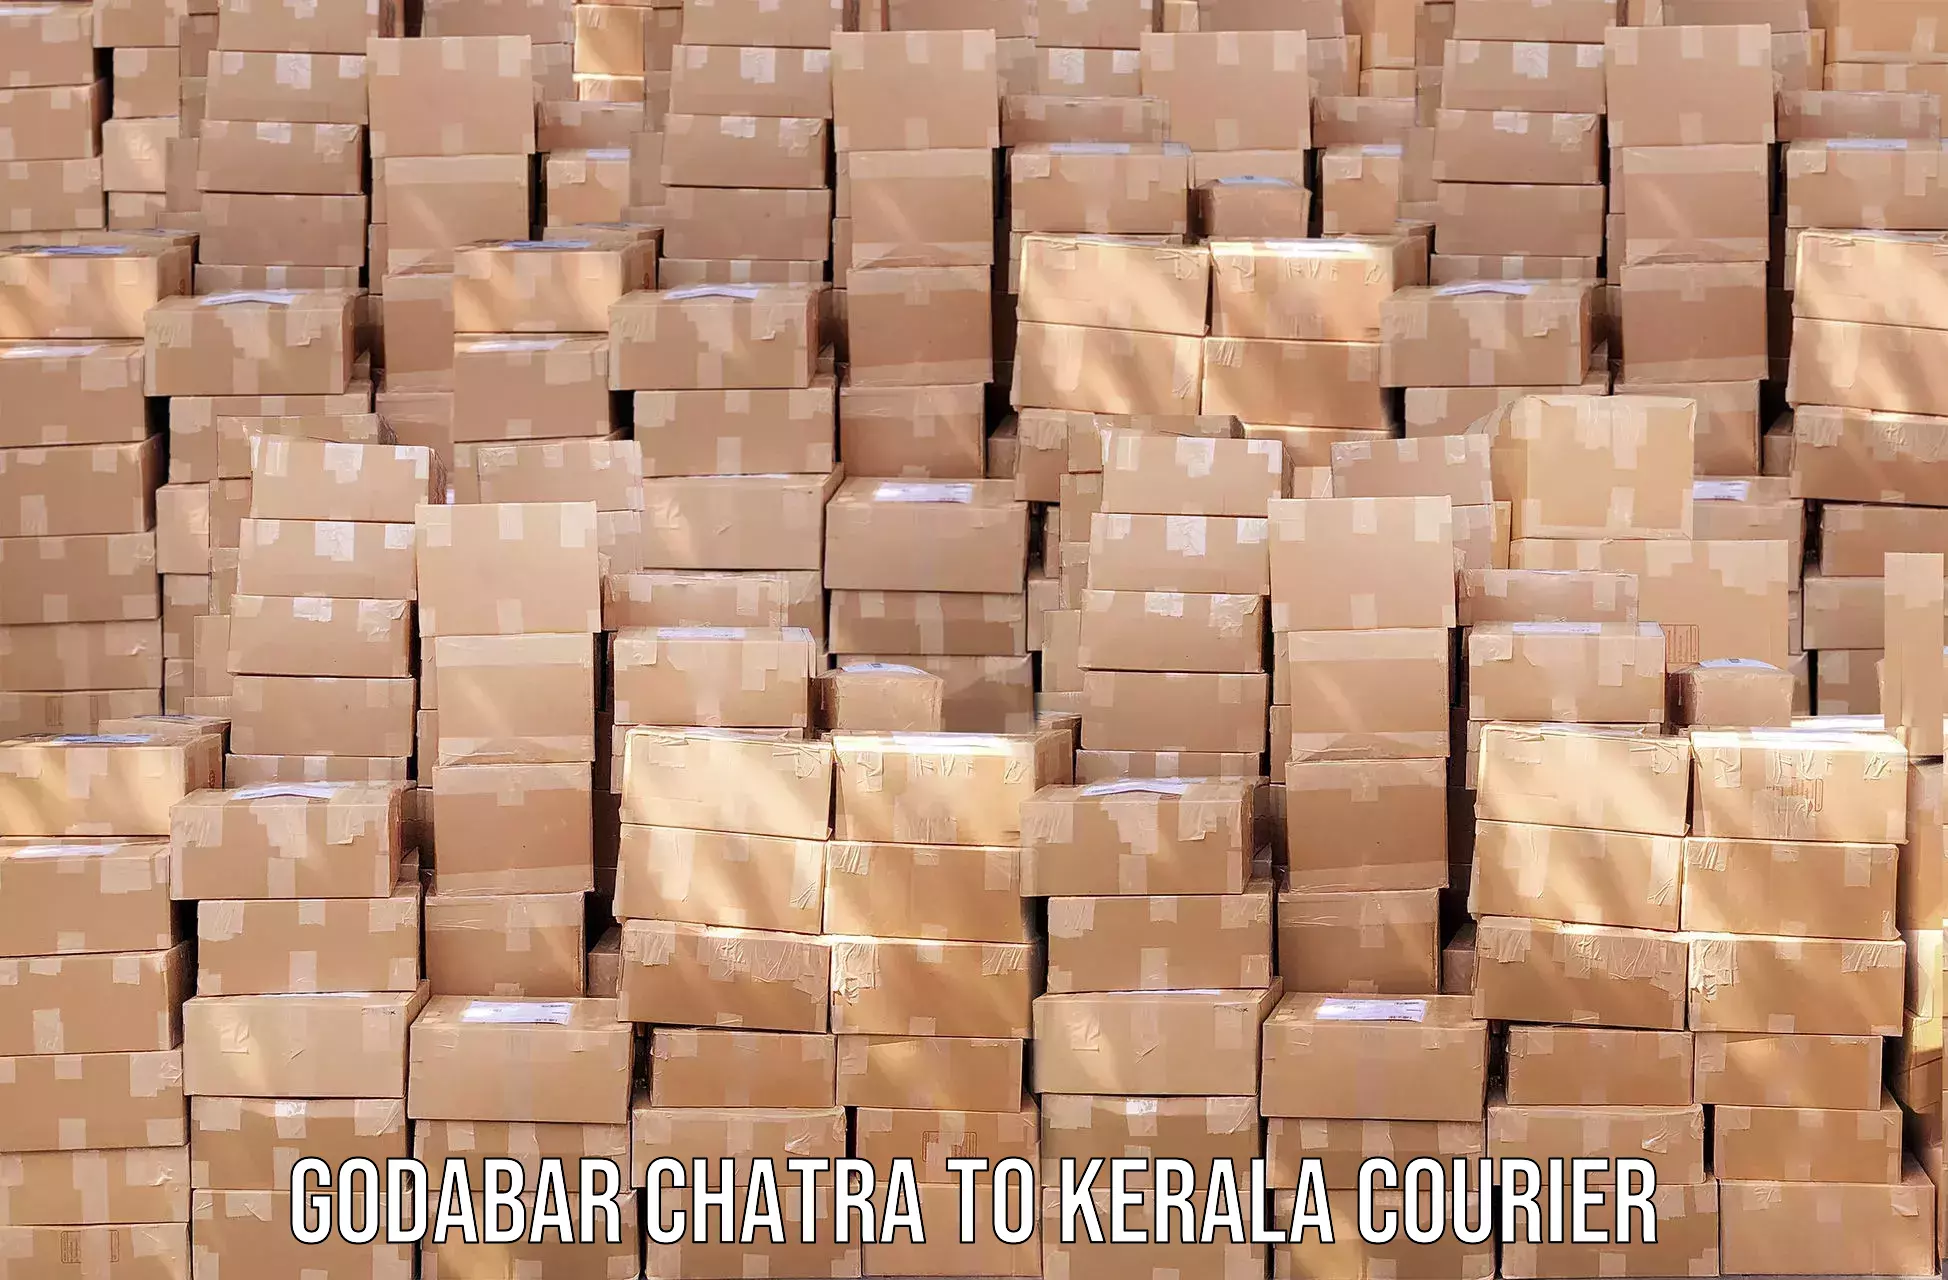 Enhanced shipping experience Godabar Chatra to Kochi